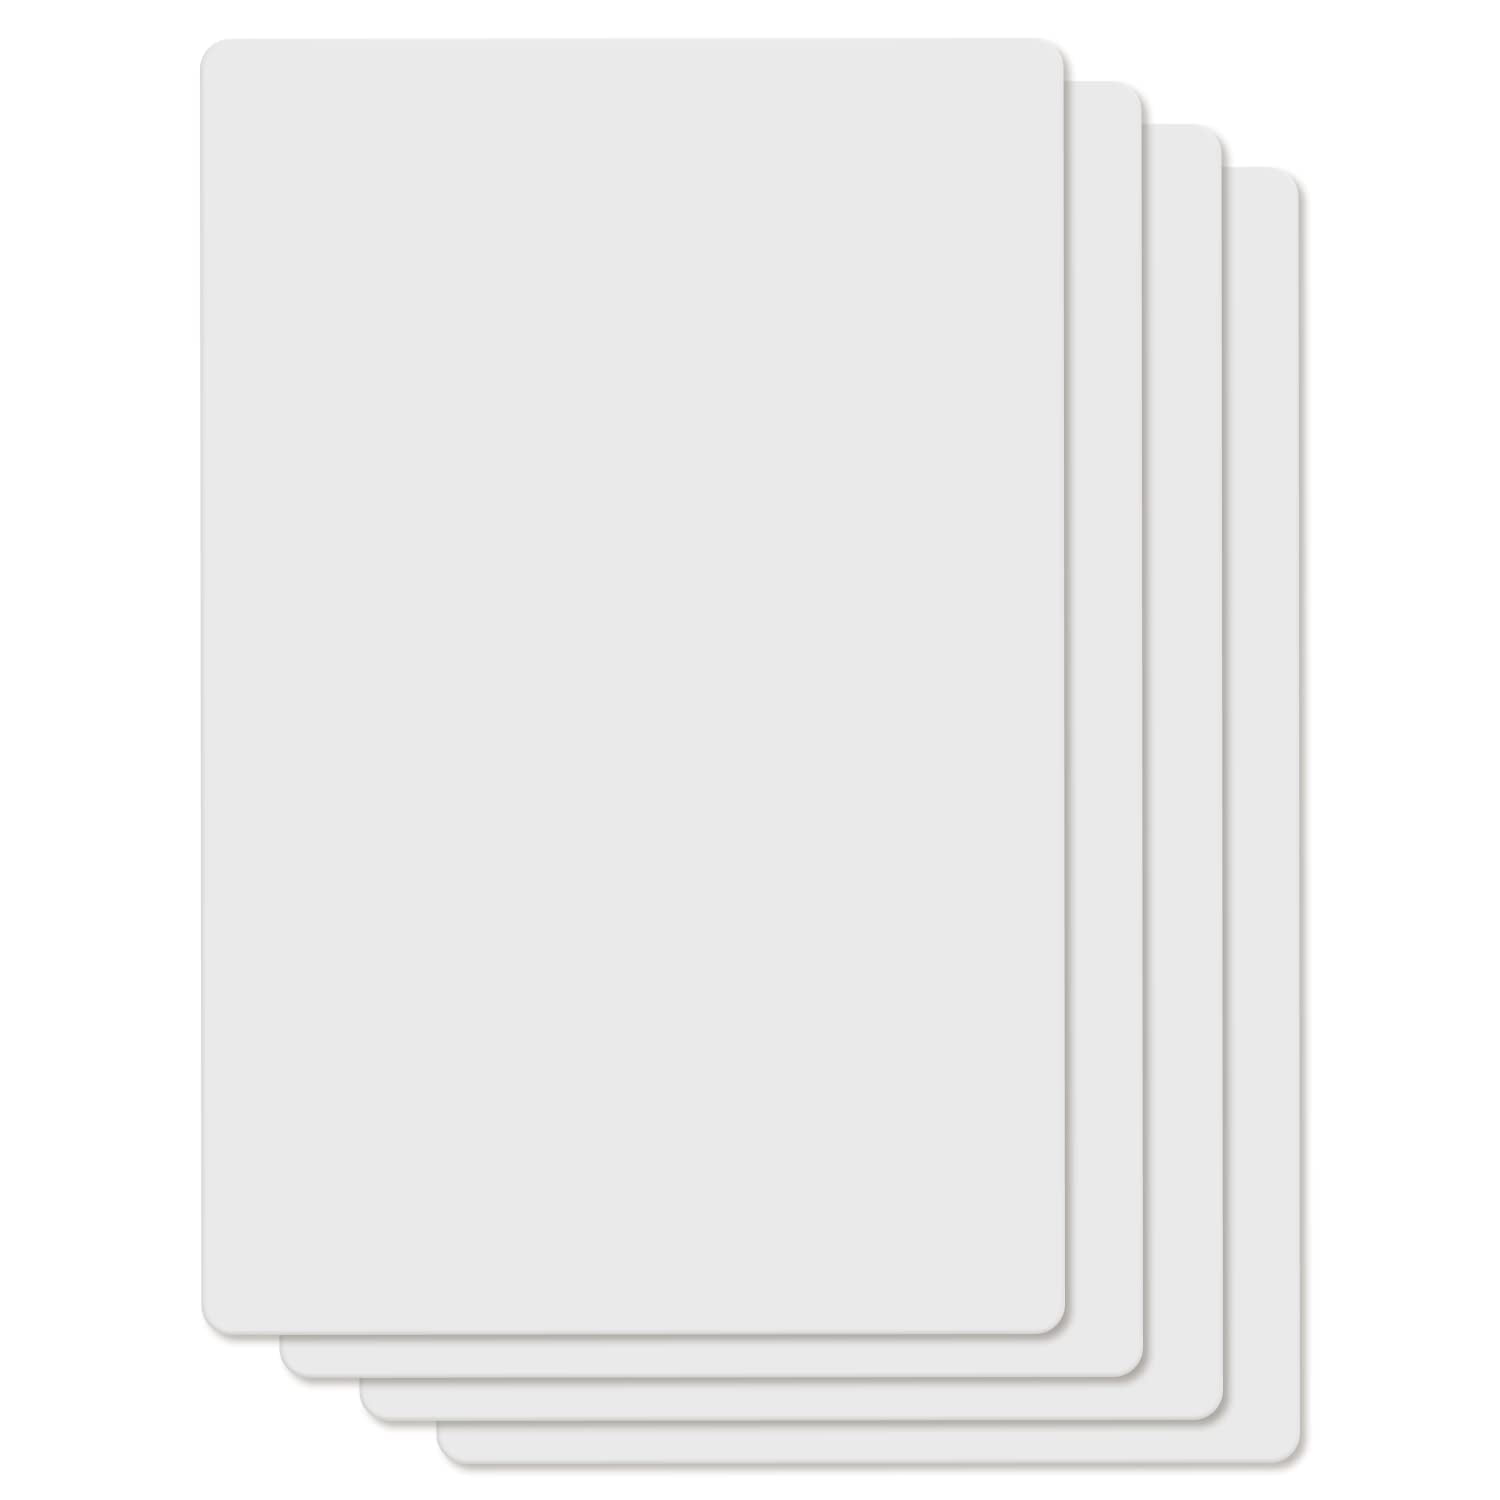 Flexible Cutting/Chopping Boards – 2 Pack (18 x 24 - No Logo)